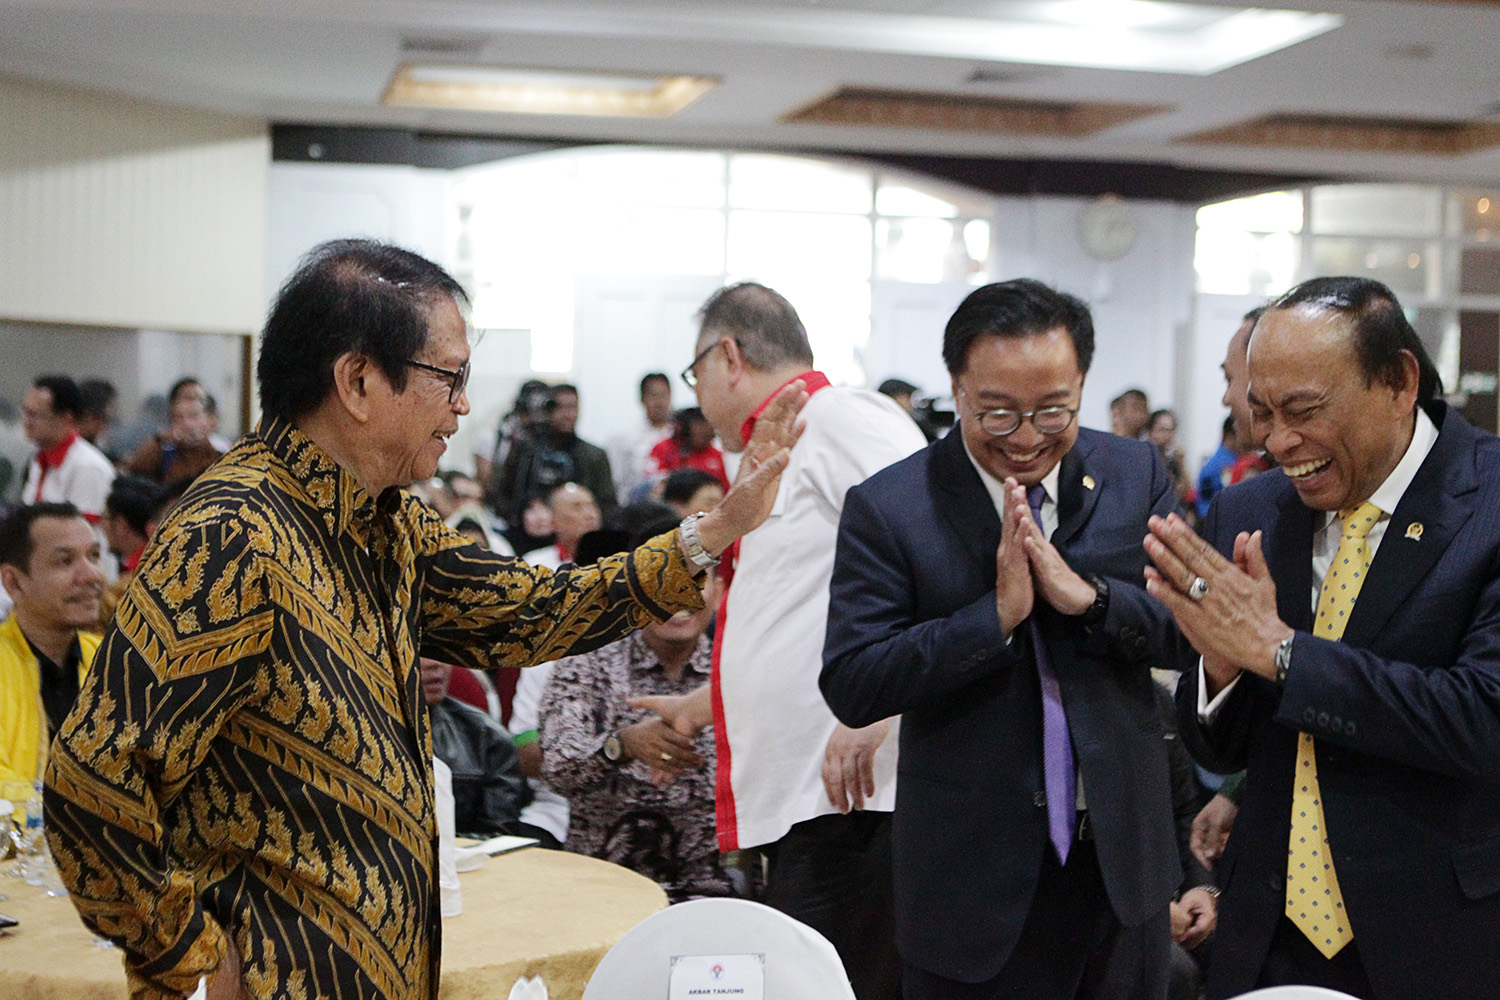 Abdul Gafur, Sang Perintis Haornas Berpulang, Presiden NOC Indonesia Merasa Kehilangan